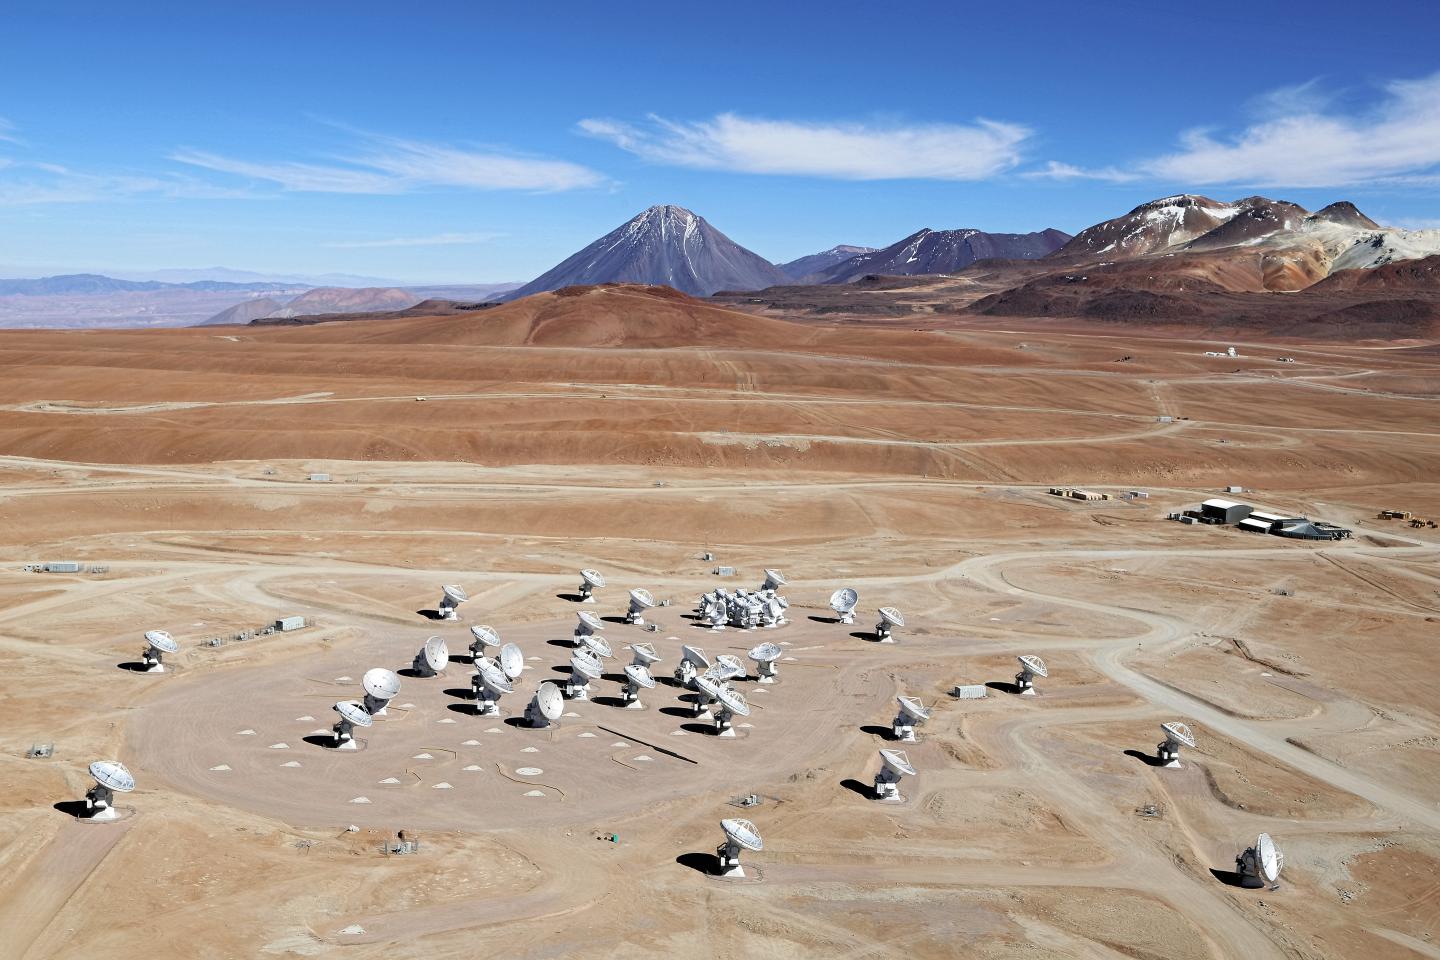 The Alma Telescope